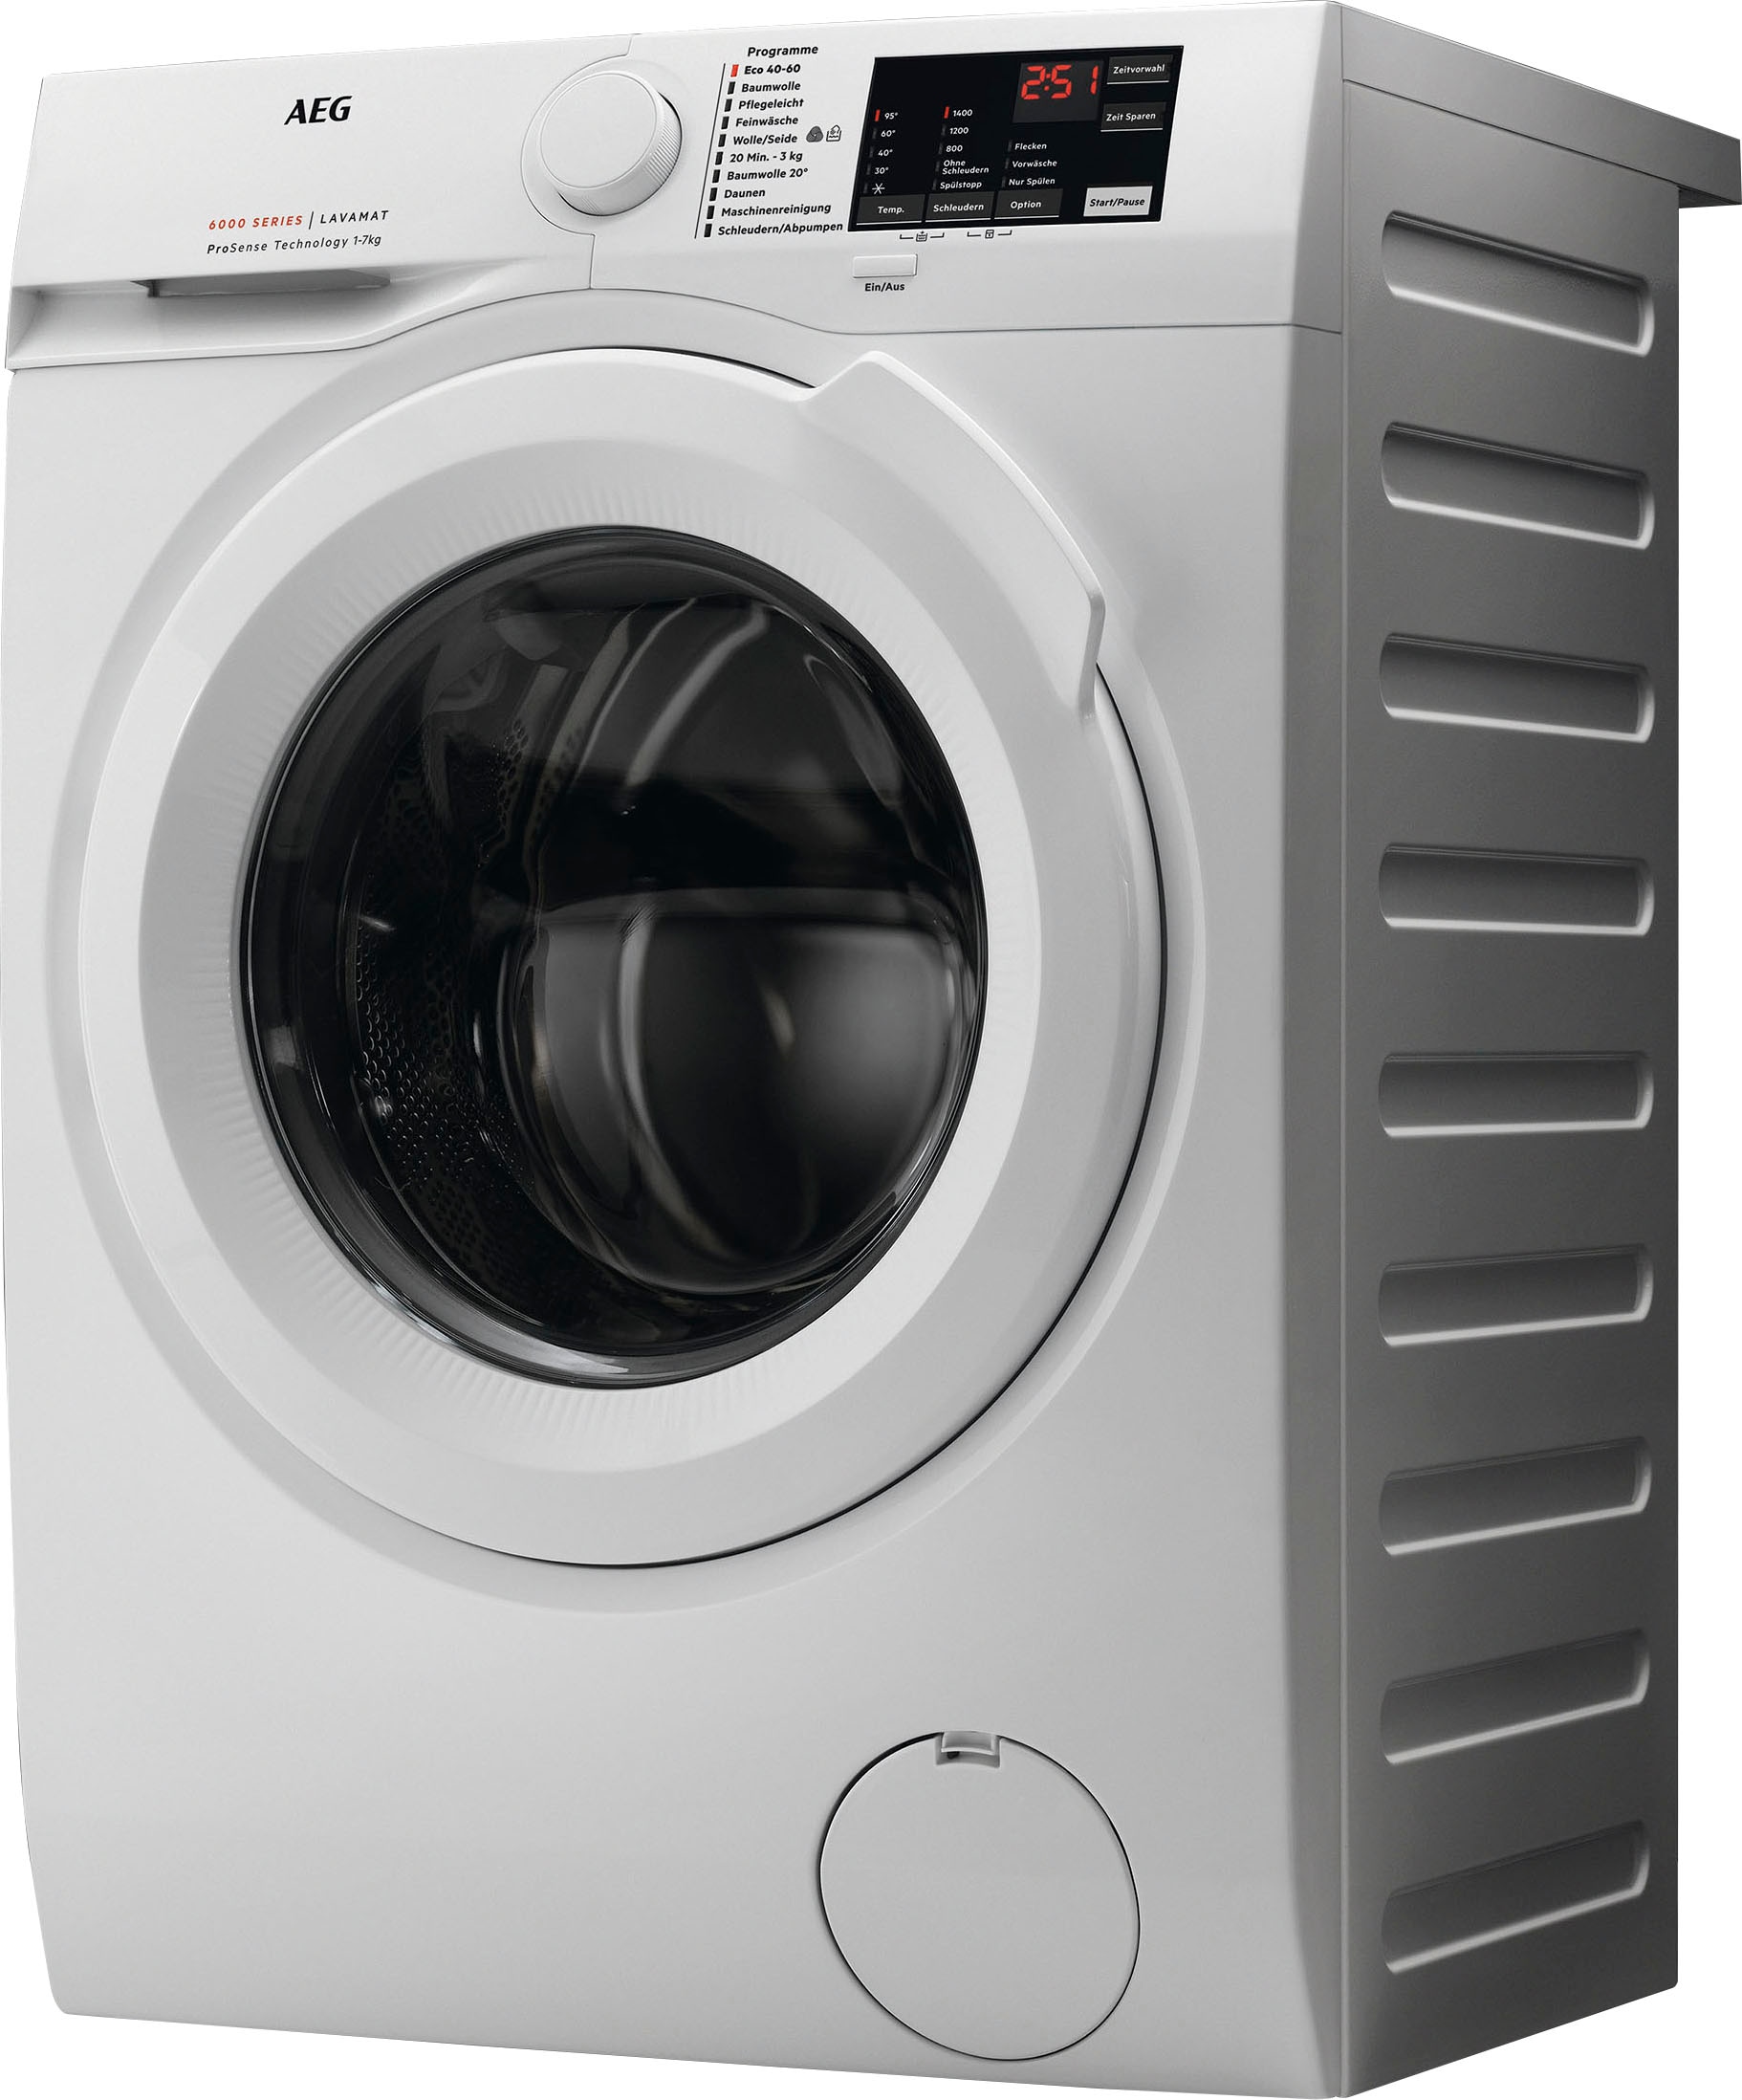 AEG Waschmaschine, L6FBA50490, 9 kg, 1400 U/min, Hygiene-/ Anti-Allergie Programm mit Dampf